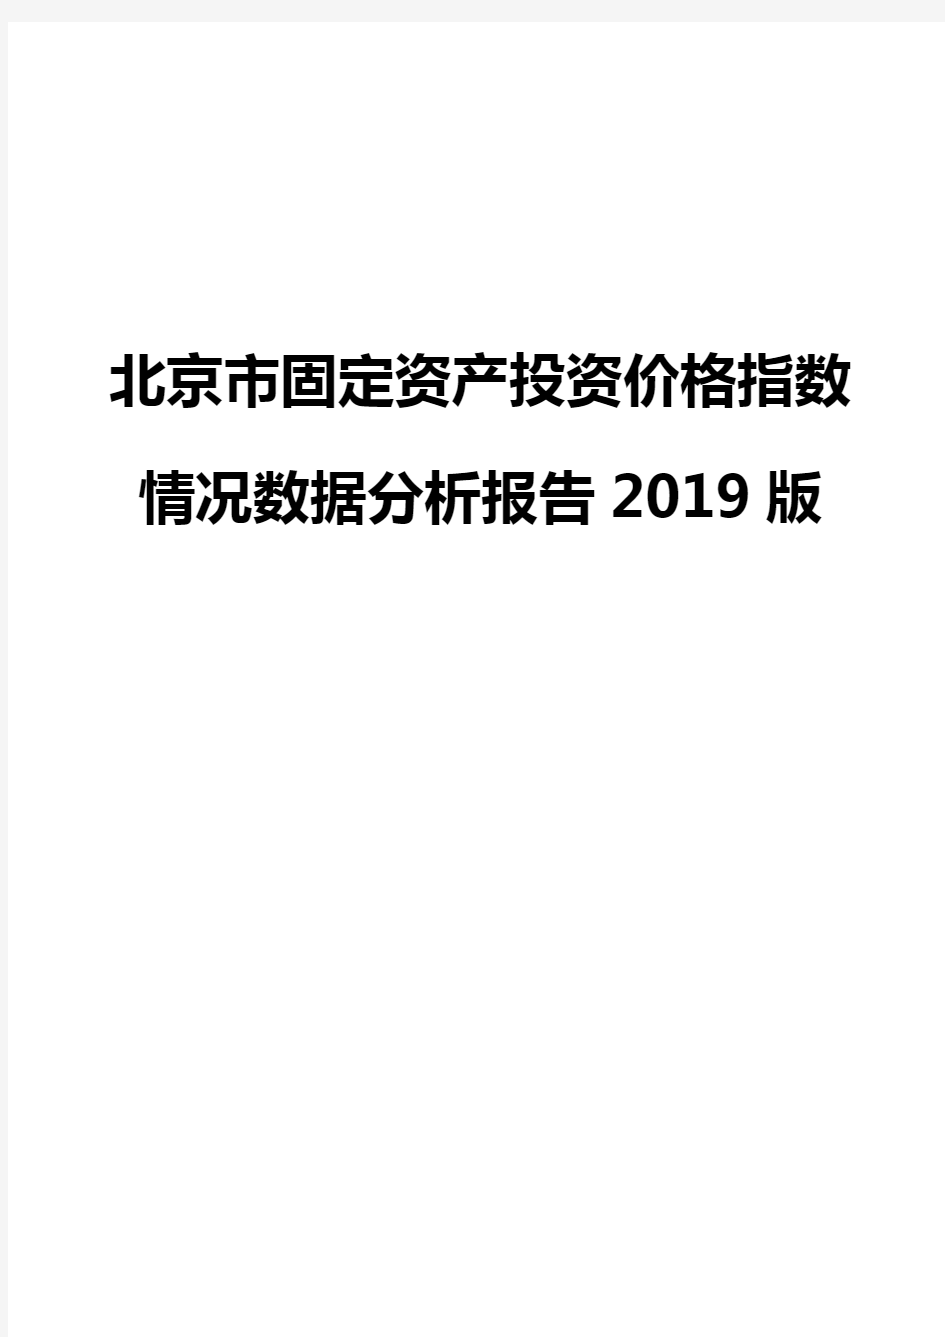 北京市固定资产投资价格指数情况数据分析报告2019版